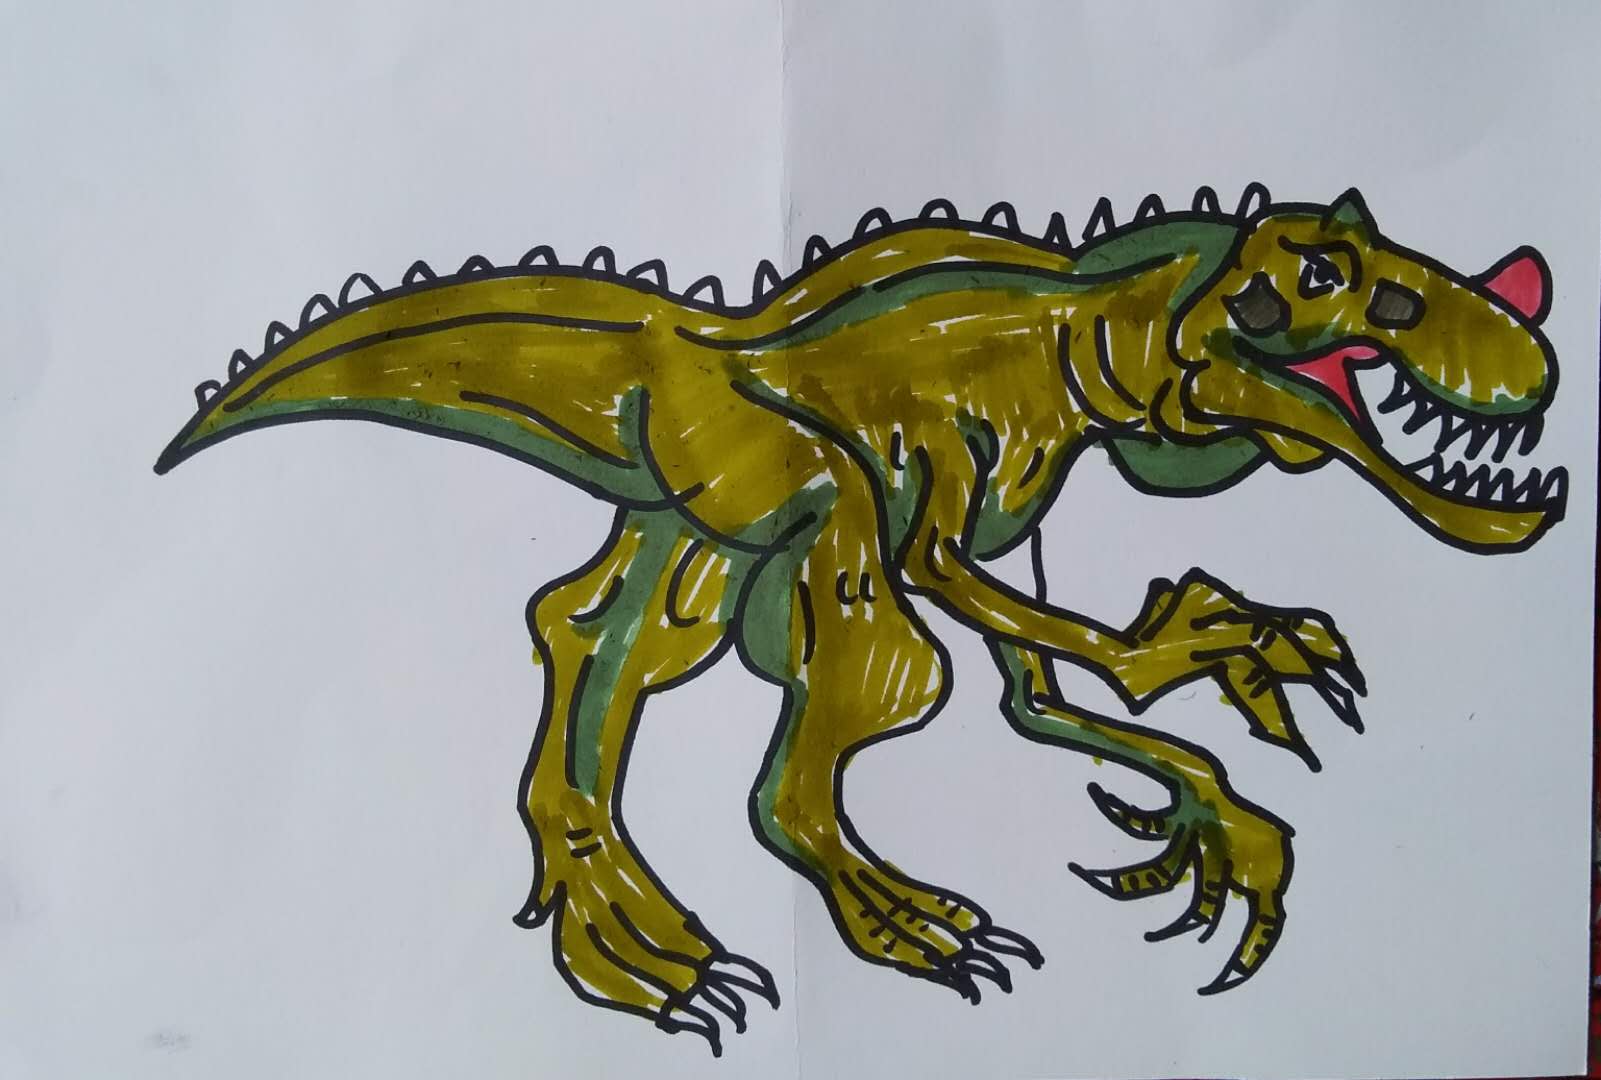 少儿创意美术恐龙来了孩子们把霸王龙画的好凶猛啊